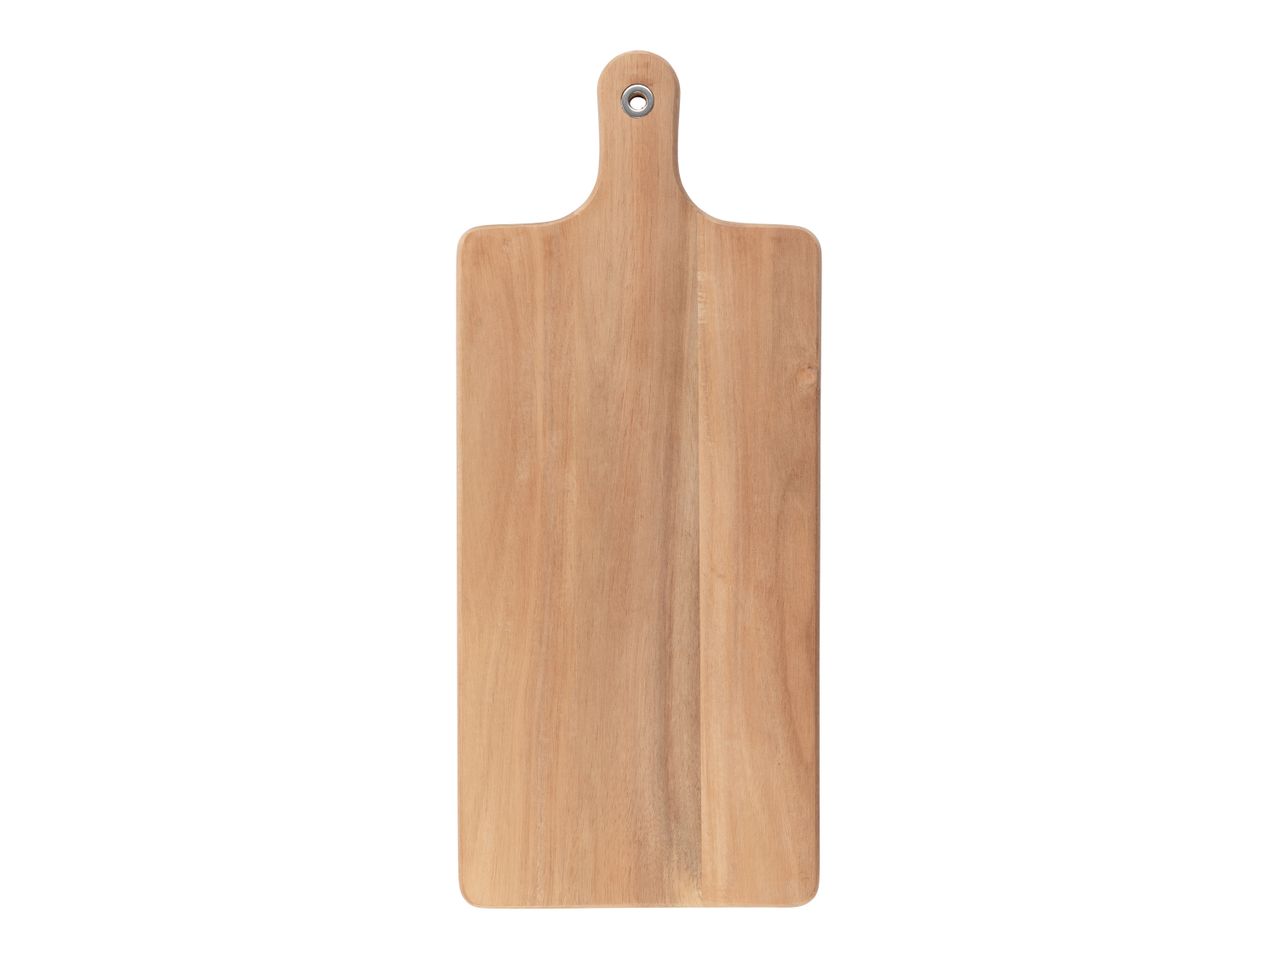 Tagliere da cucina , prezzo 8,99 EUR 
Tagliere da cucina 1 o 2 pezzi 
- In legno ...